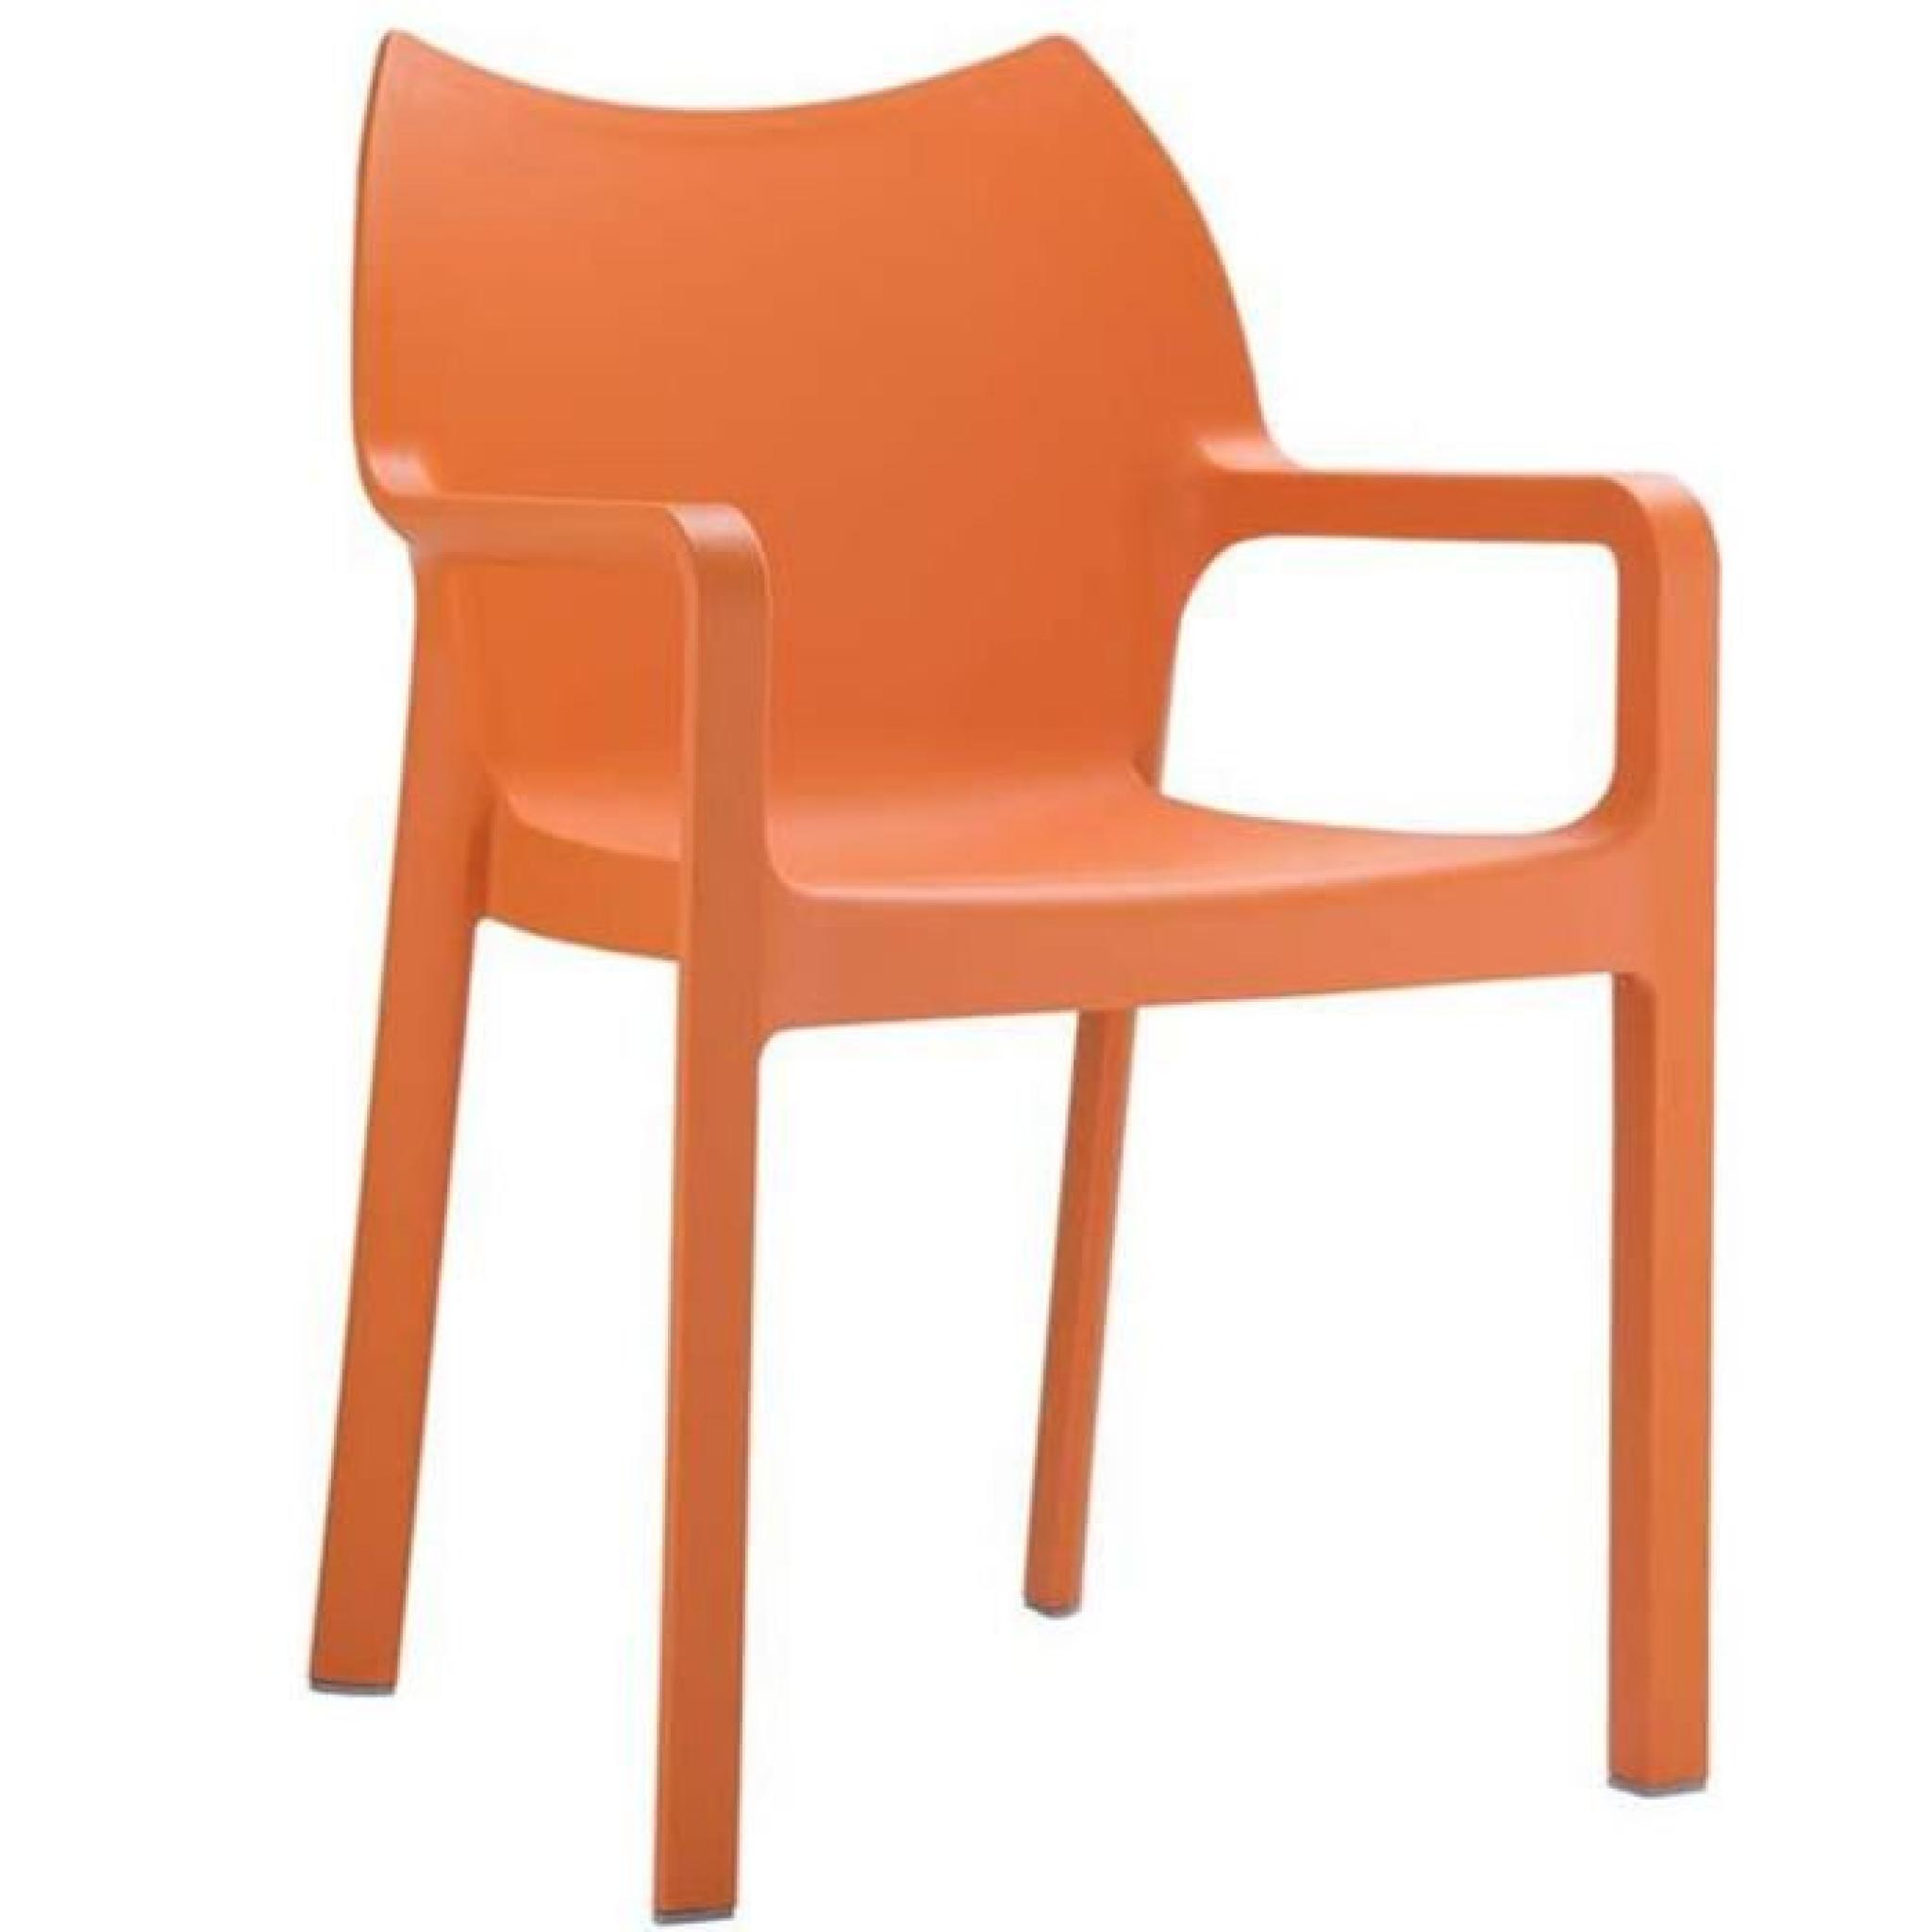 Chaise de jardin empilable en plastique orange, Dim : H81 x P50 x L44 cm